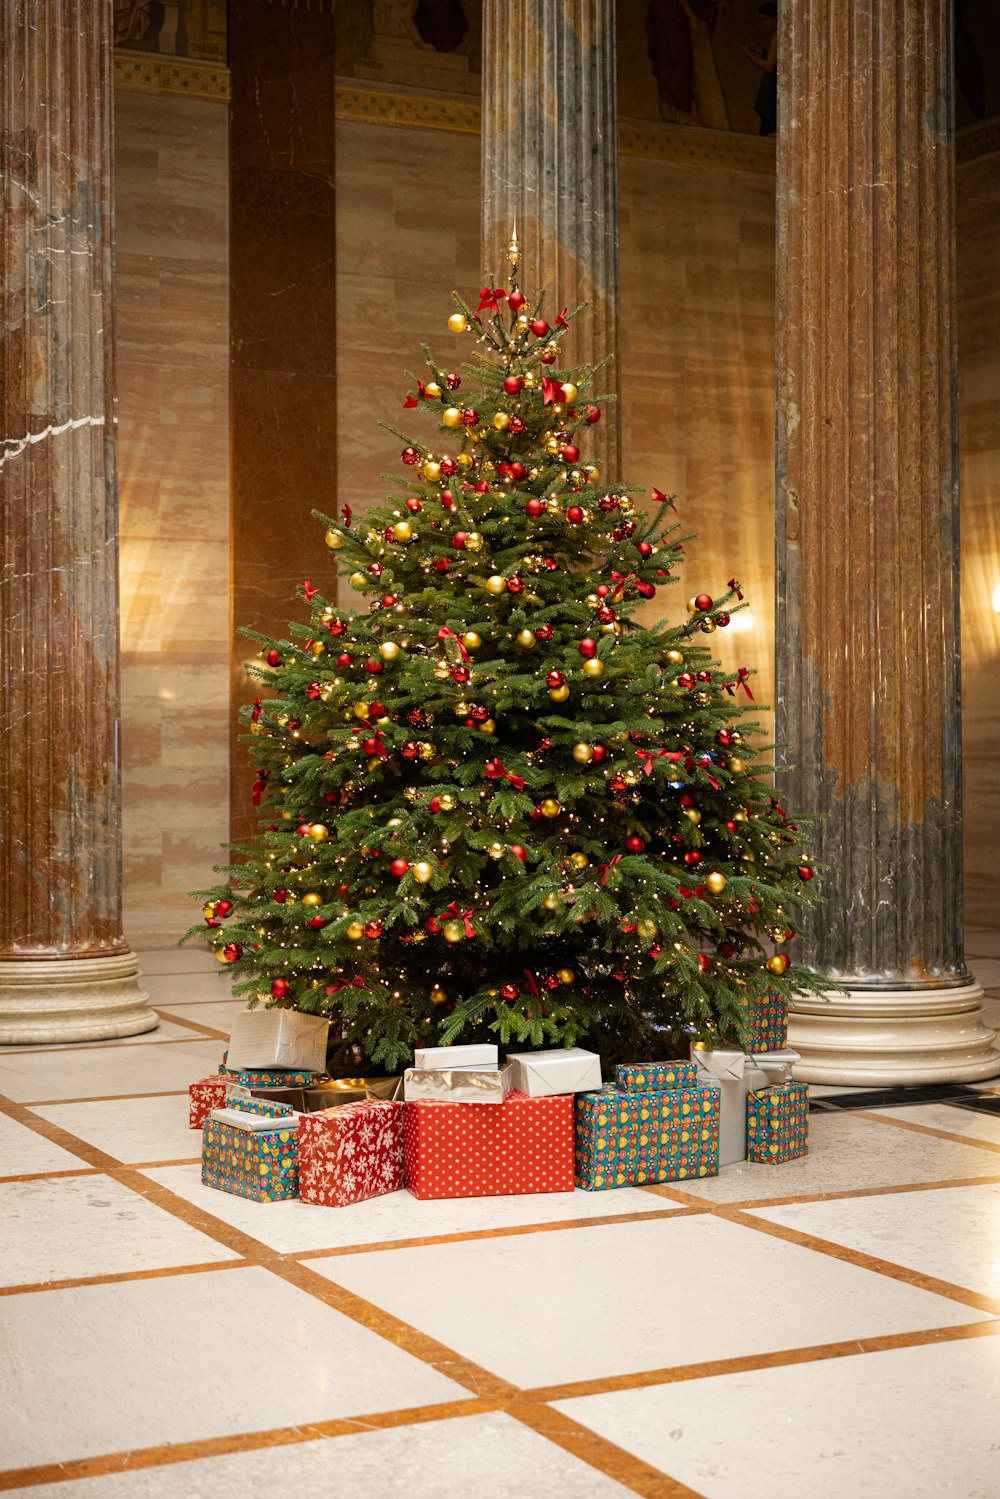 Uma pequena árvore de Natal com presentes sob ela